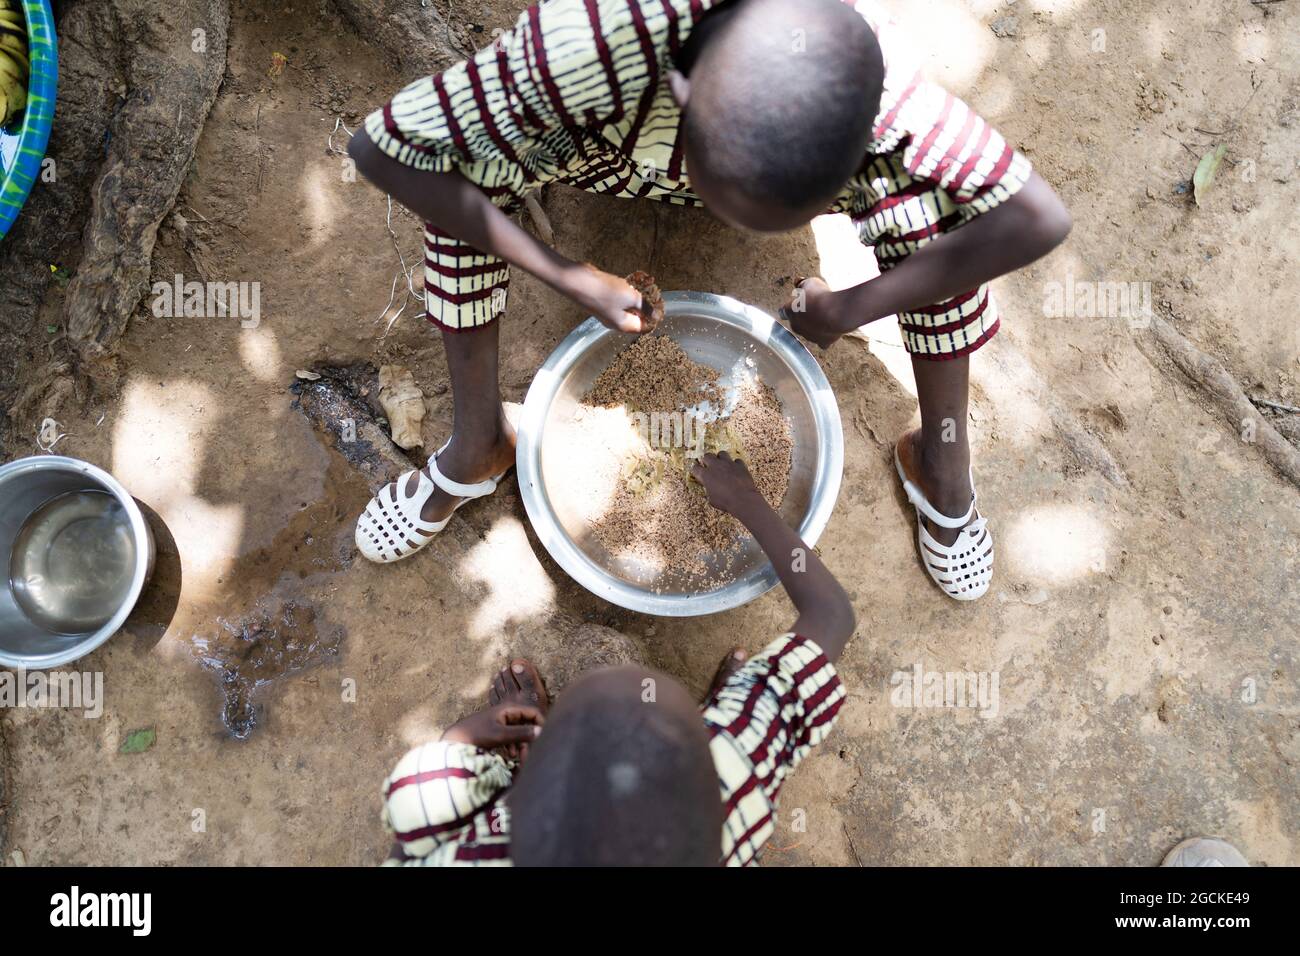 Dans cette image, deux petits frères noirs africains vêques de vêtements identiques partagent une assiette de riz sans viande, assis sur le sol, avec leur bon han Banque D'Images